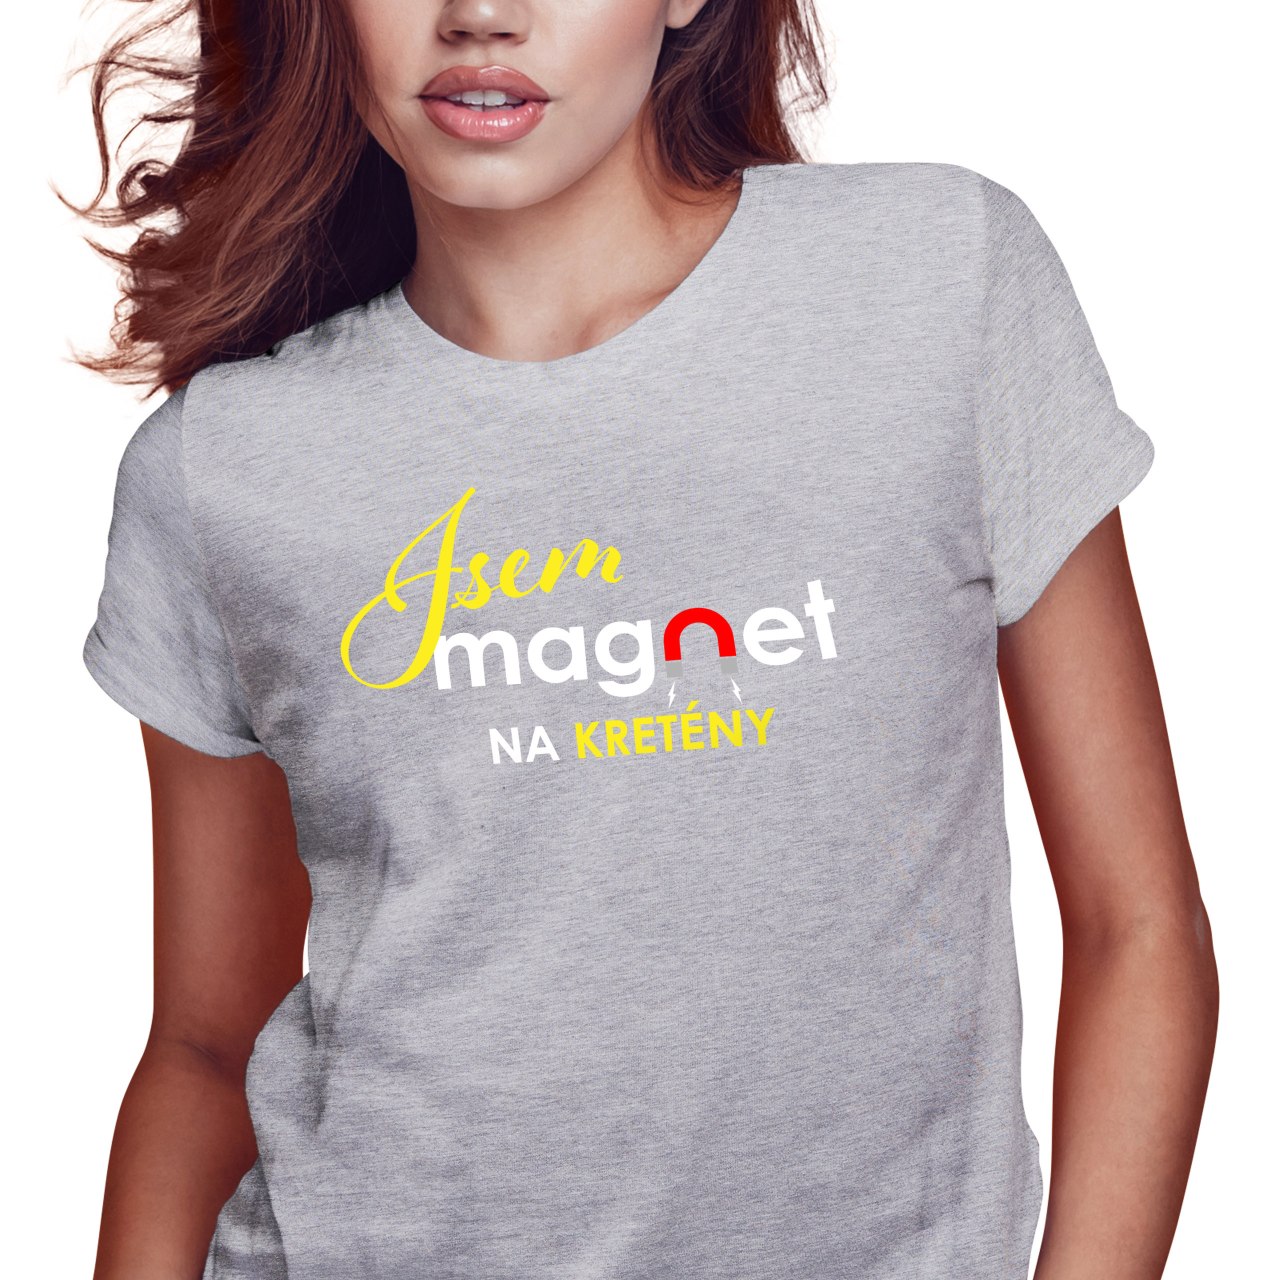 Dámské tričko s potiskem “Jsem magnet na kretény”